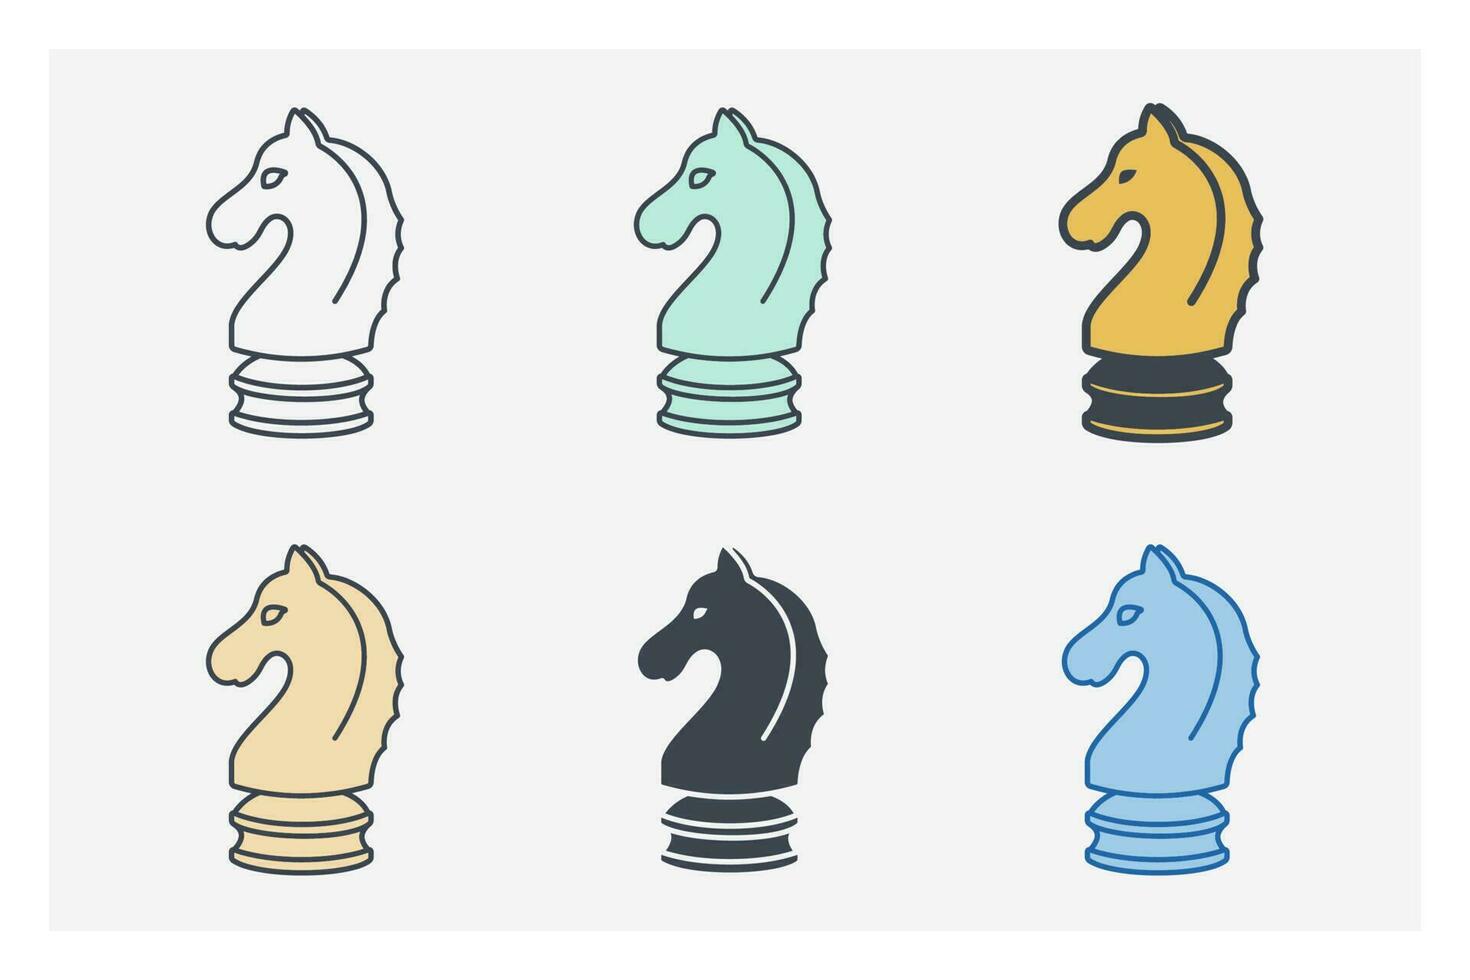 cheval échecs. affaires stratégie icône symbole modèle pour graphique et la toile conception collection logo vecteur illustration